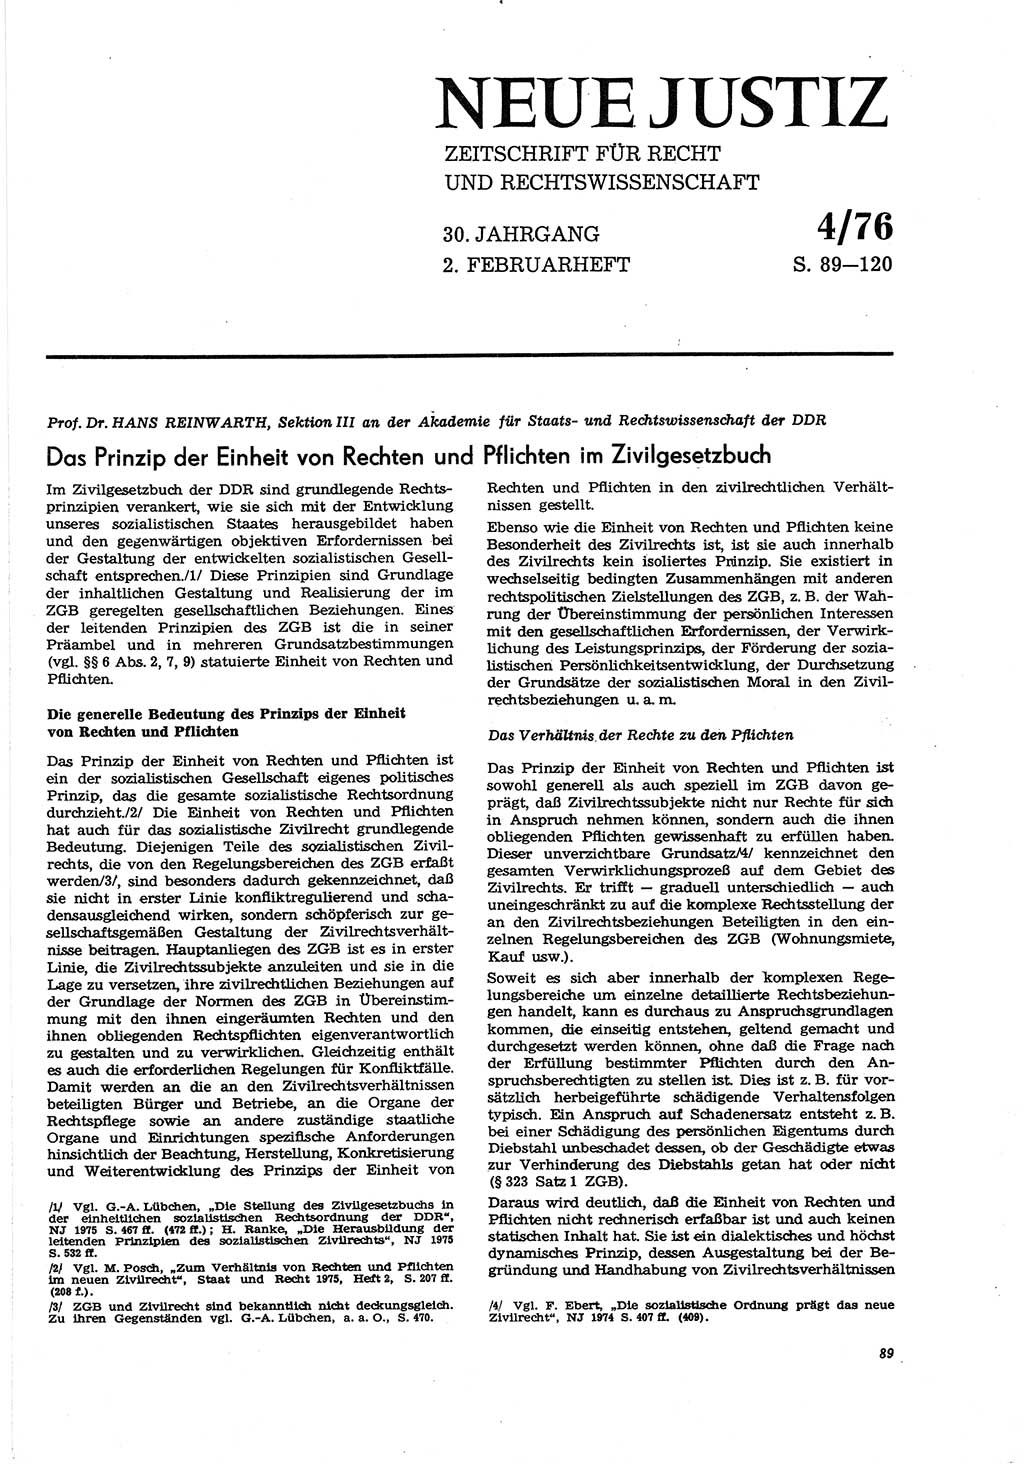 Neue Justiz (NJ), Zeitschrift für Recht und Rechtswissenschaft [Deutsche Demokratische Republik (DDR)], 30. Jahrgang 1976, Seite 89 (NJ DDR 1976, S. 89)